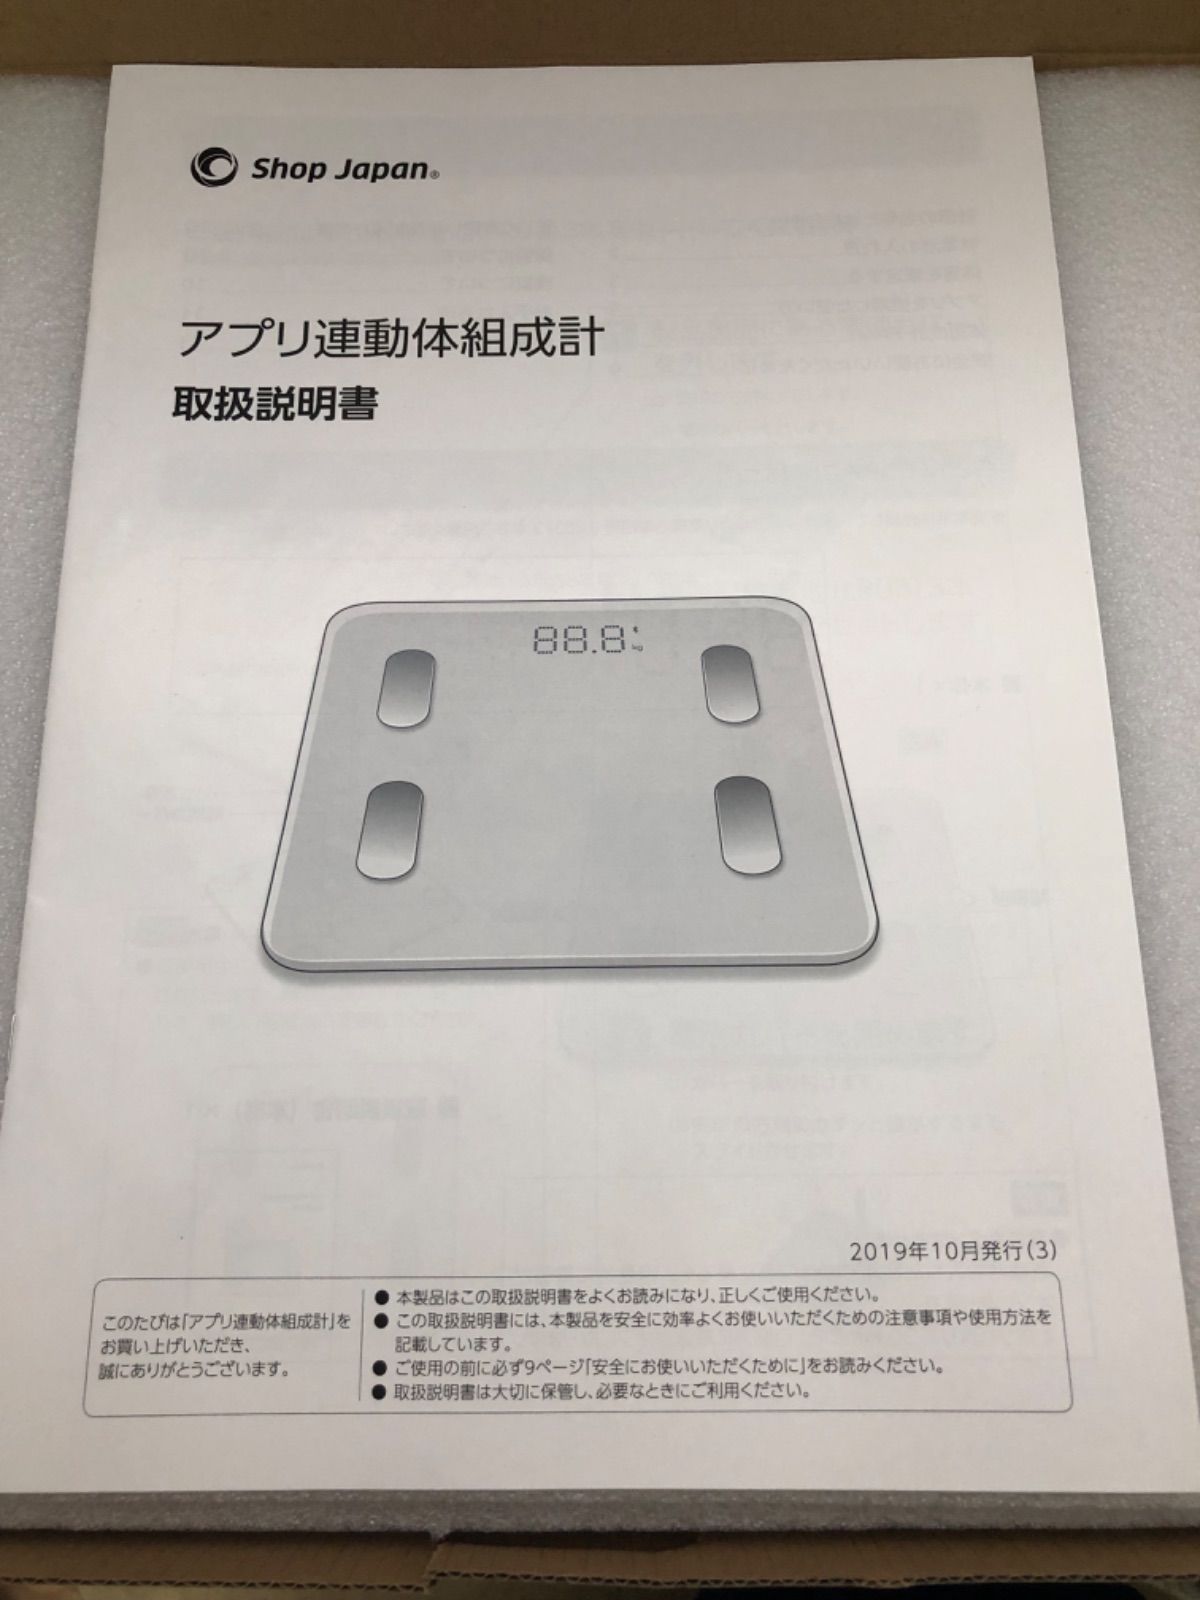 SHOP JAPAN（ショップジャパン） アプリ連動型体組成計 FN005900